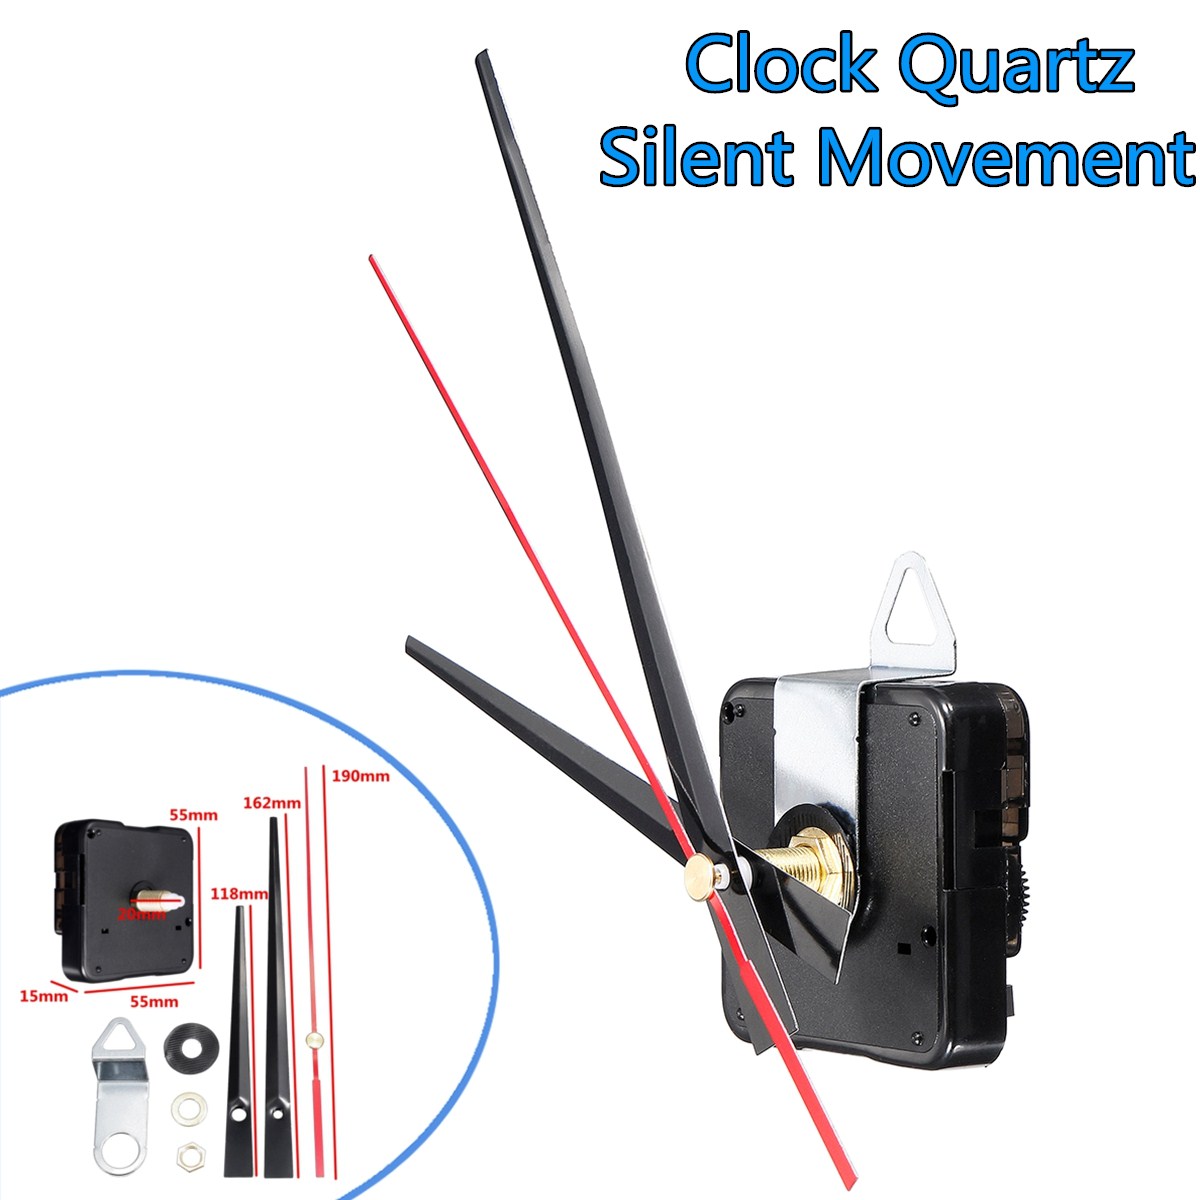 20mm-Quartz-Silent-Clock-Movement-Mechanism-Module-DIY-Hour-Minute-Second-Without-Battery-1331012-7